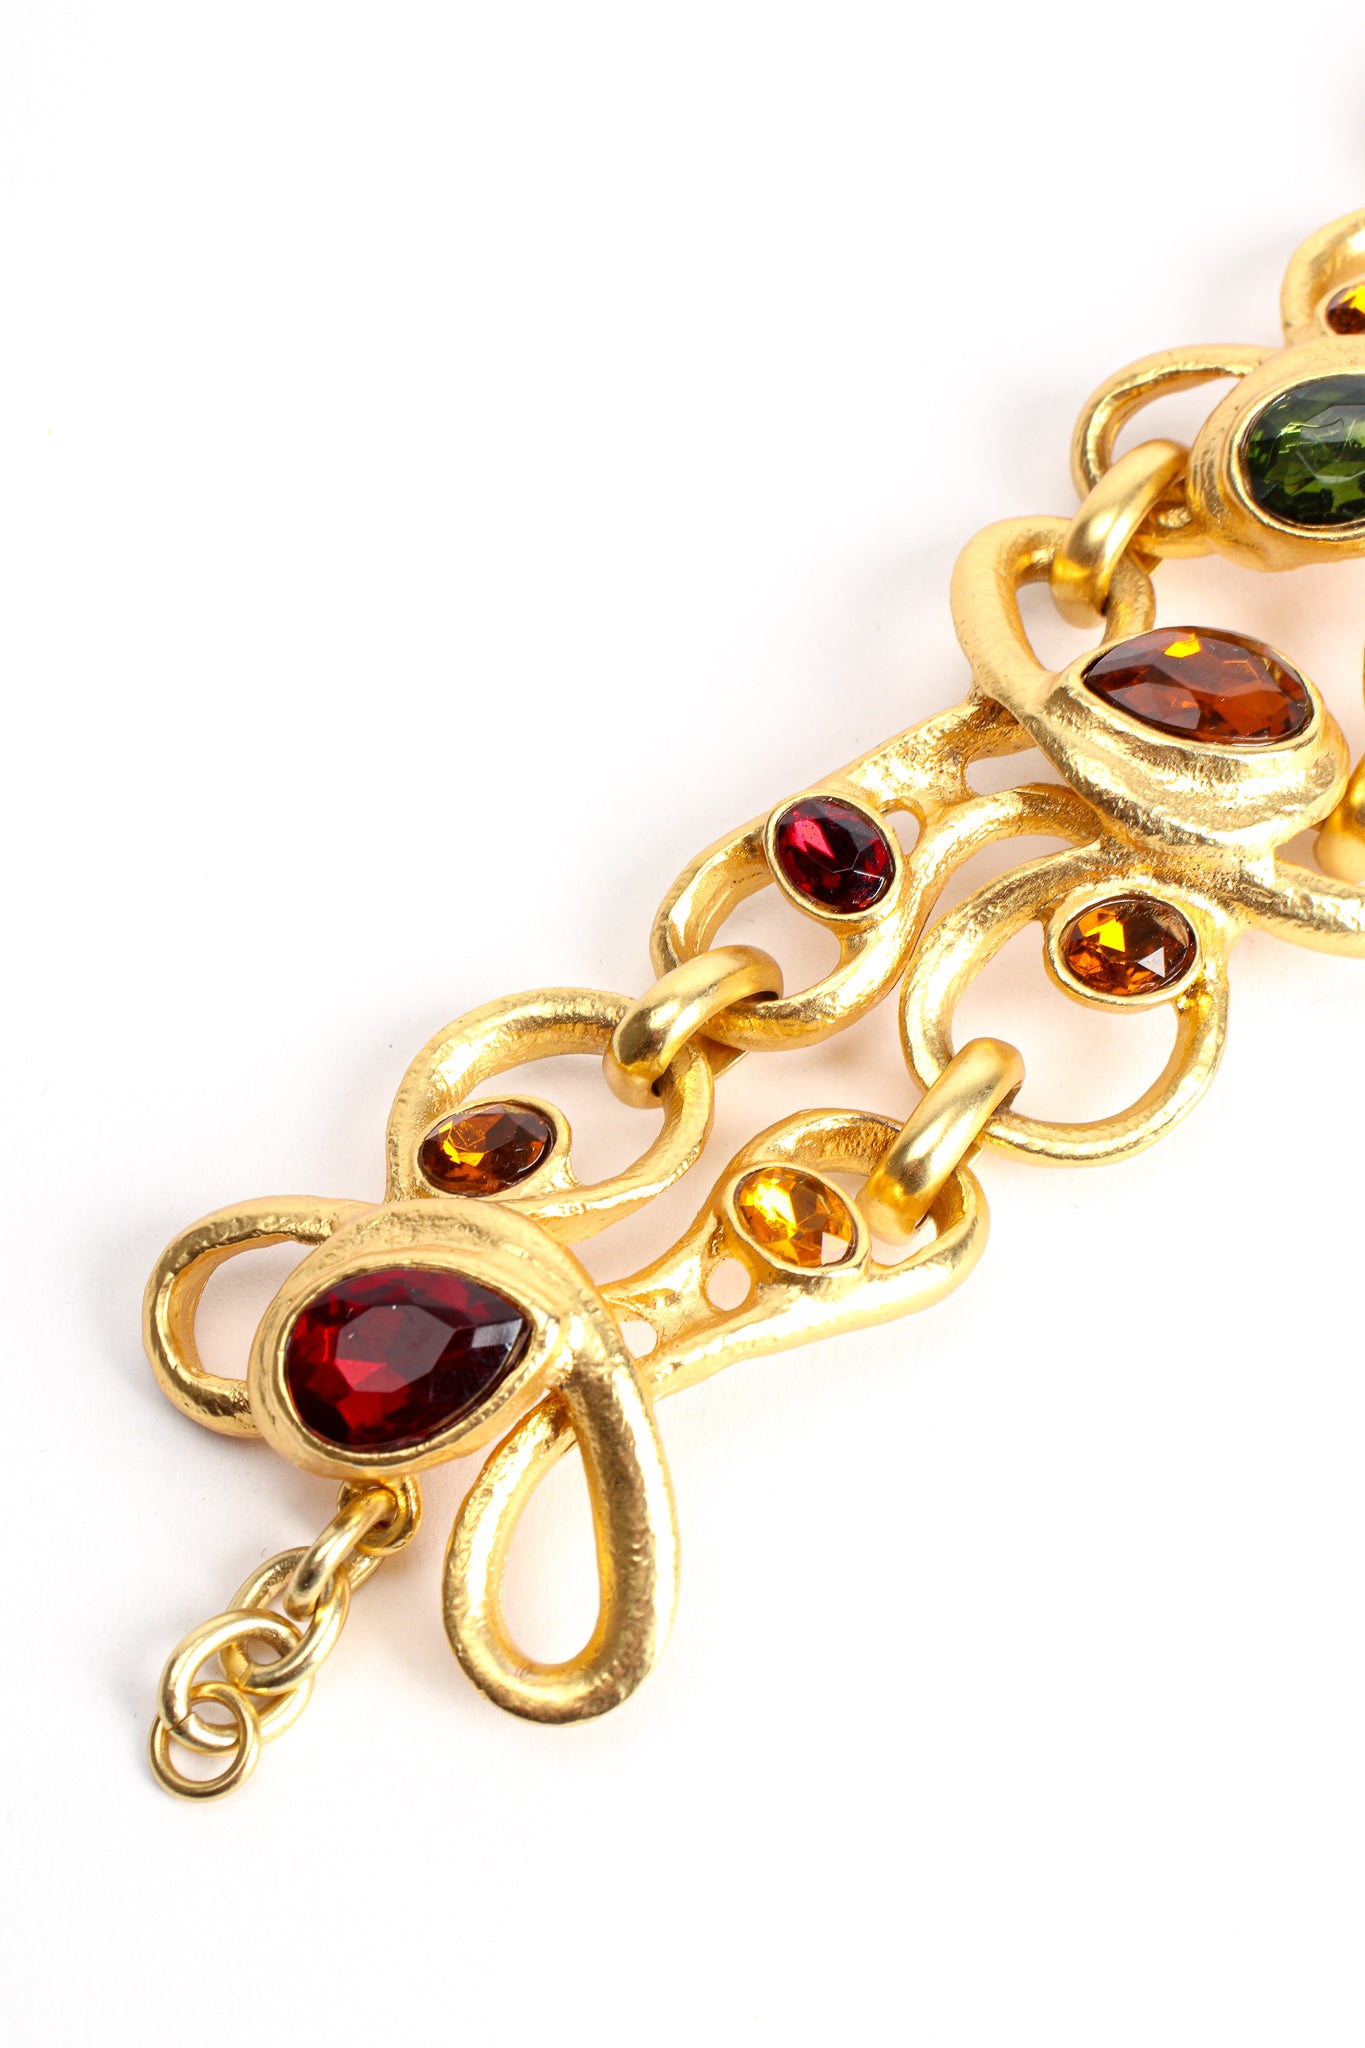 Vintage Modernist Jeweled Bracelet detail at Recess Los Angeles